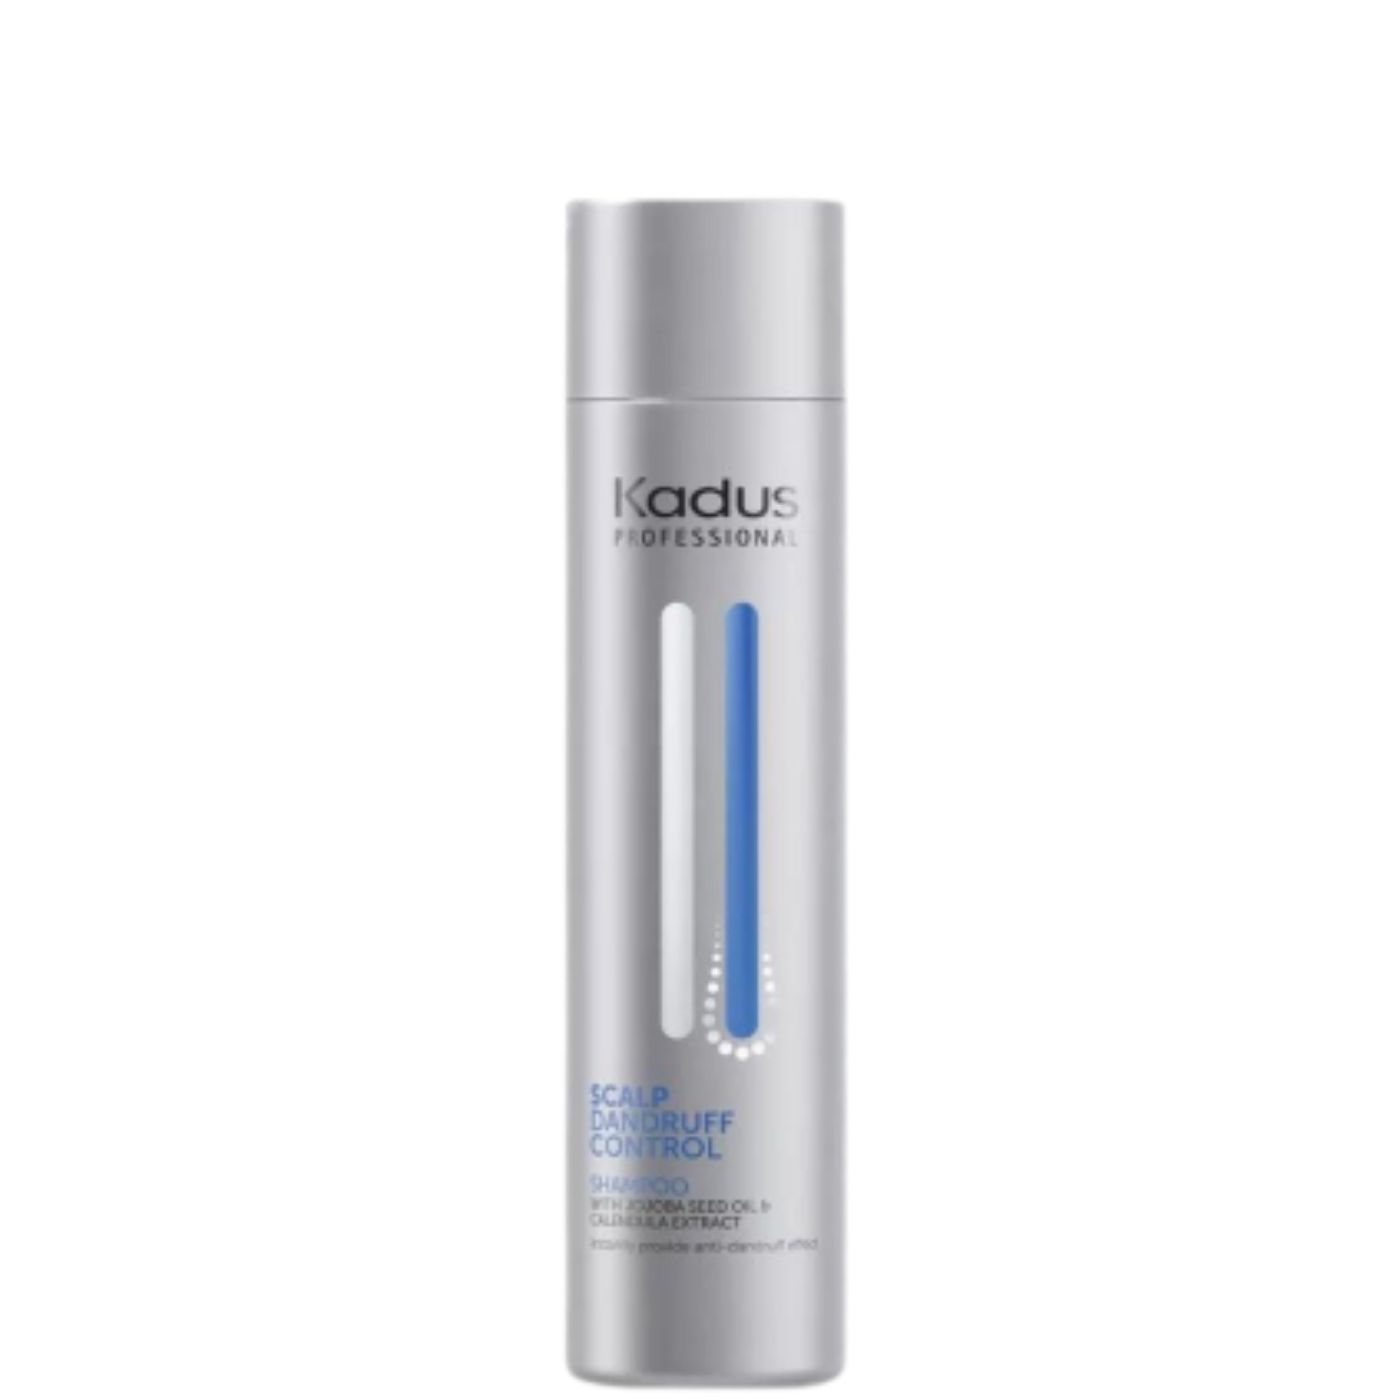 Kadus Shampoo Scalp Dandruff Control 250 ml